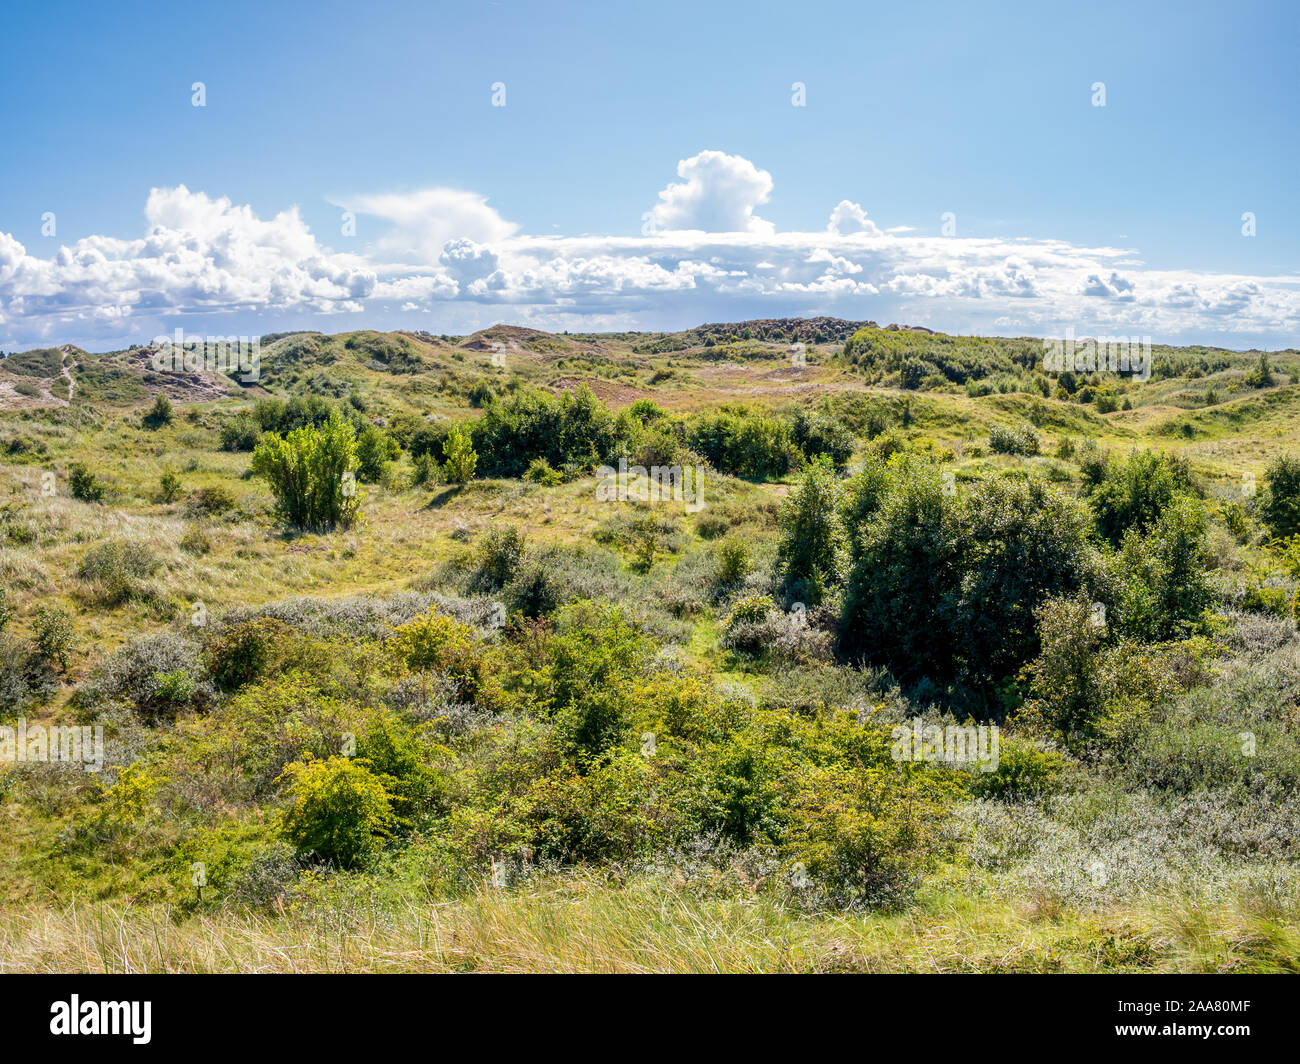 Westerduinen dunas con arbustos y hierba en frisón occidental isla Schiermonnikoog, Holanda Foto de stock